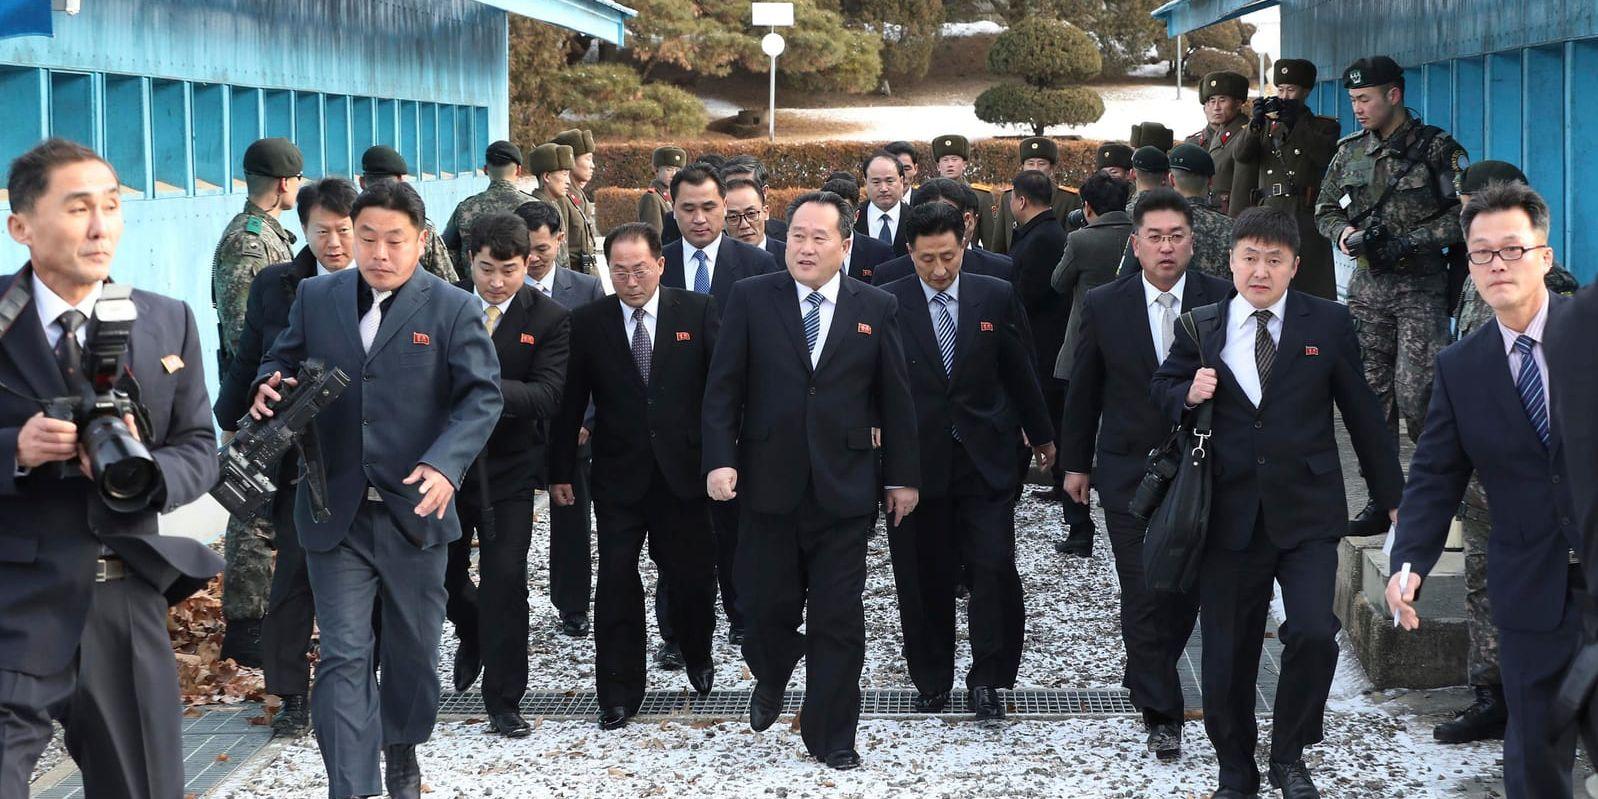 Nordkorea vill åter träffa Sydkorea i gränsbyn Panmunjom. På bilden syns den nordkoreanska delegationen när de anlände till samtalen i tisdags.